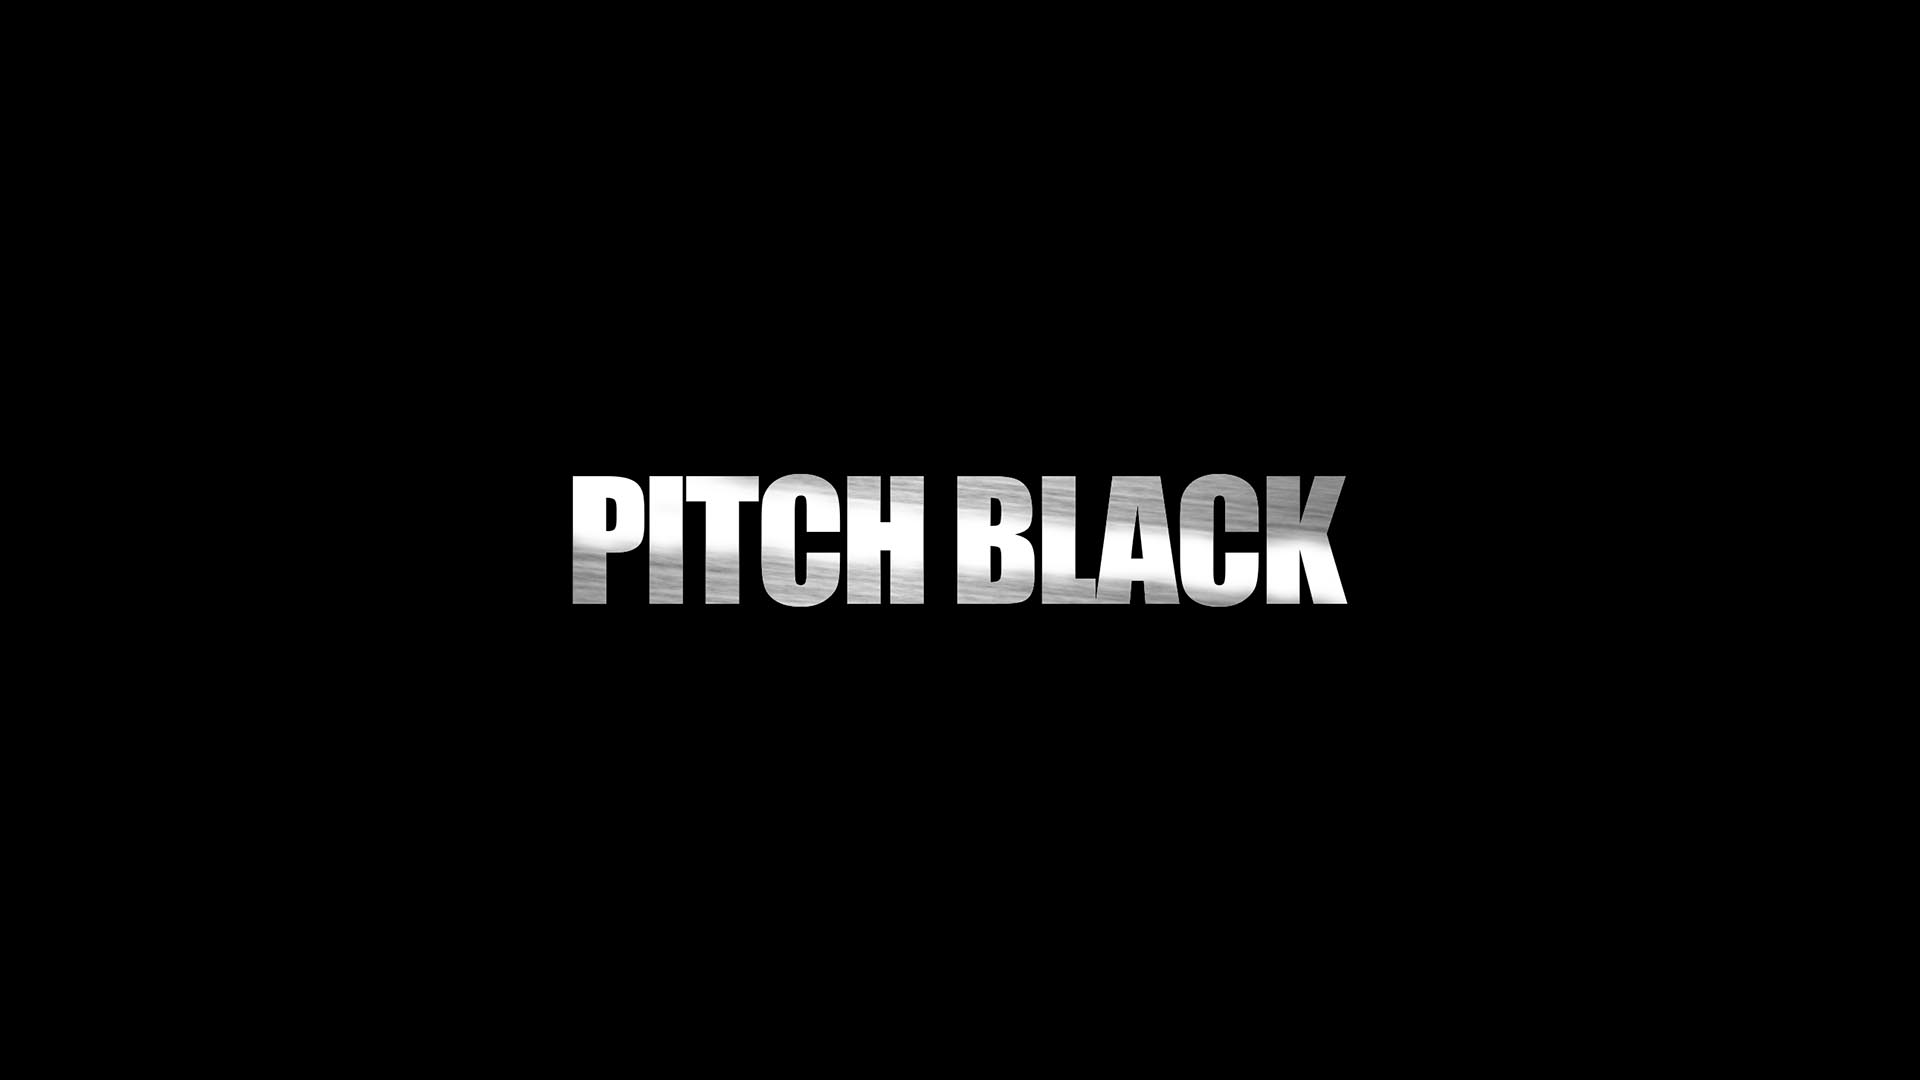 Pitch Black HD Wallpaper